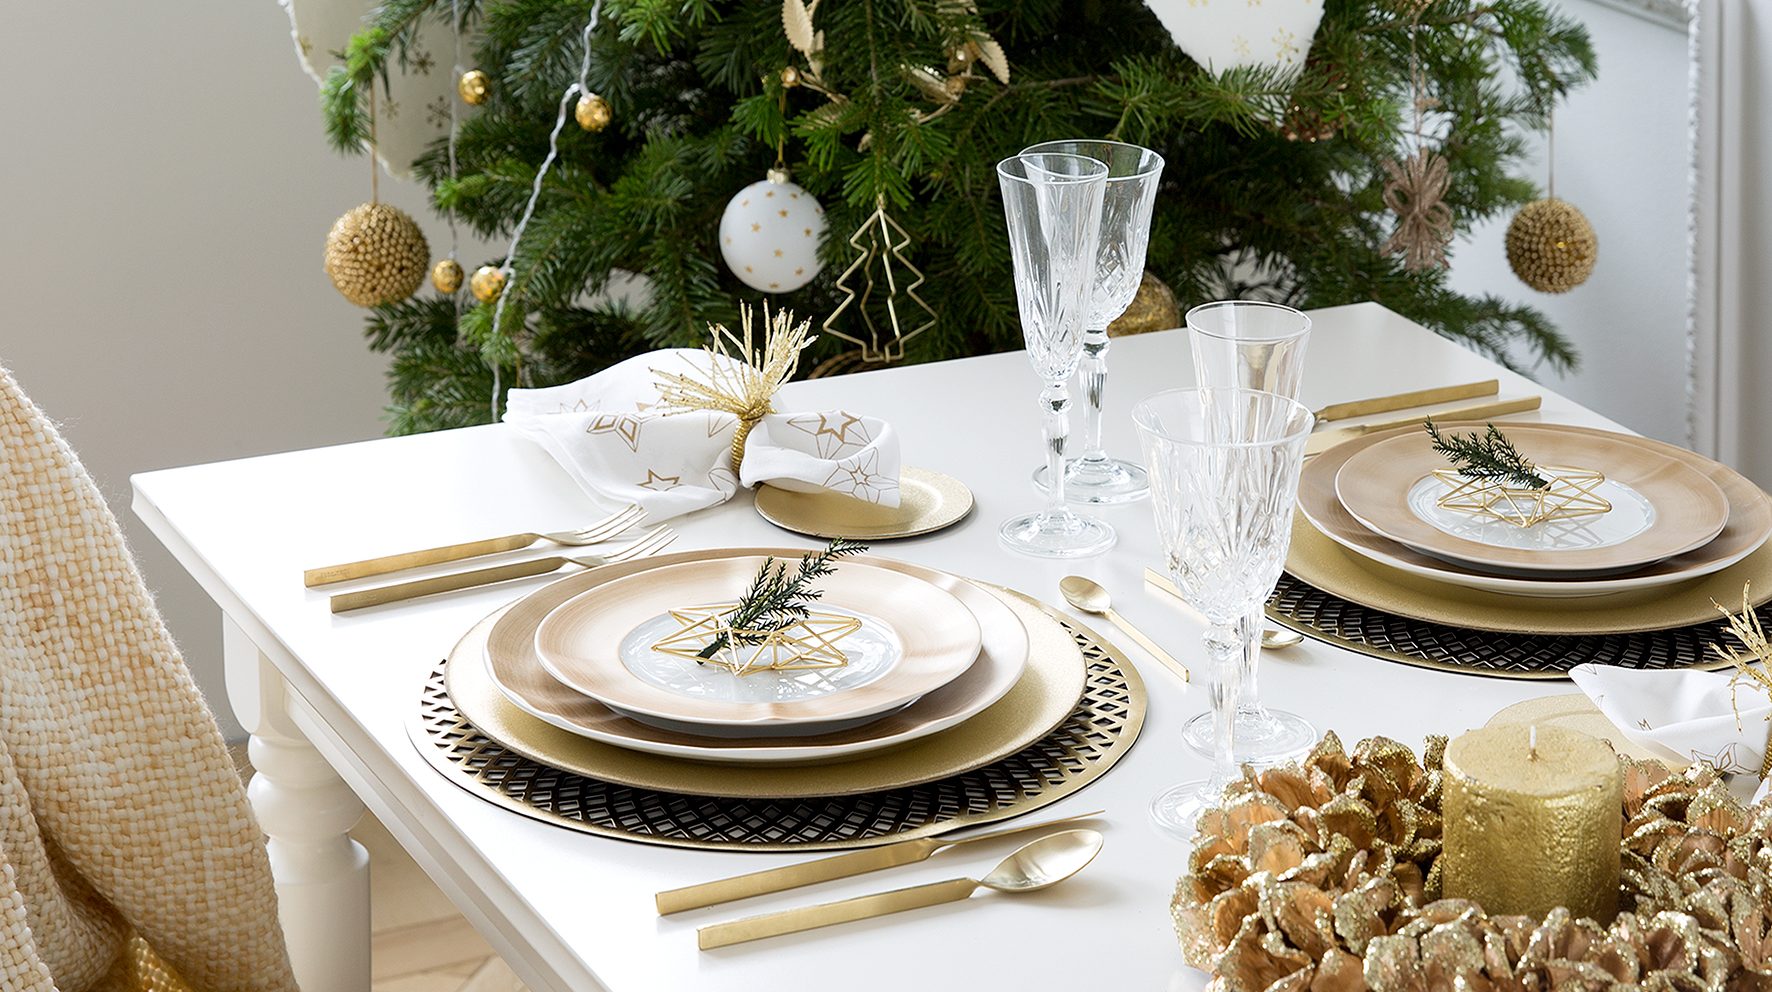 meerderheid toewijding Een bezoek aan grootouders Kerst tafel dekken met veel goud! - Christmaholic.nl